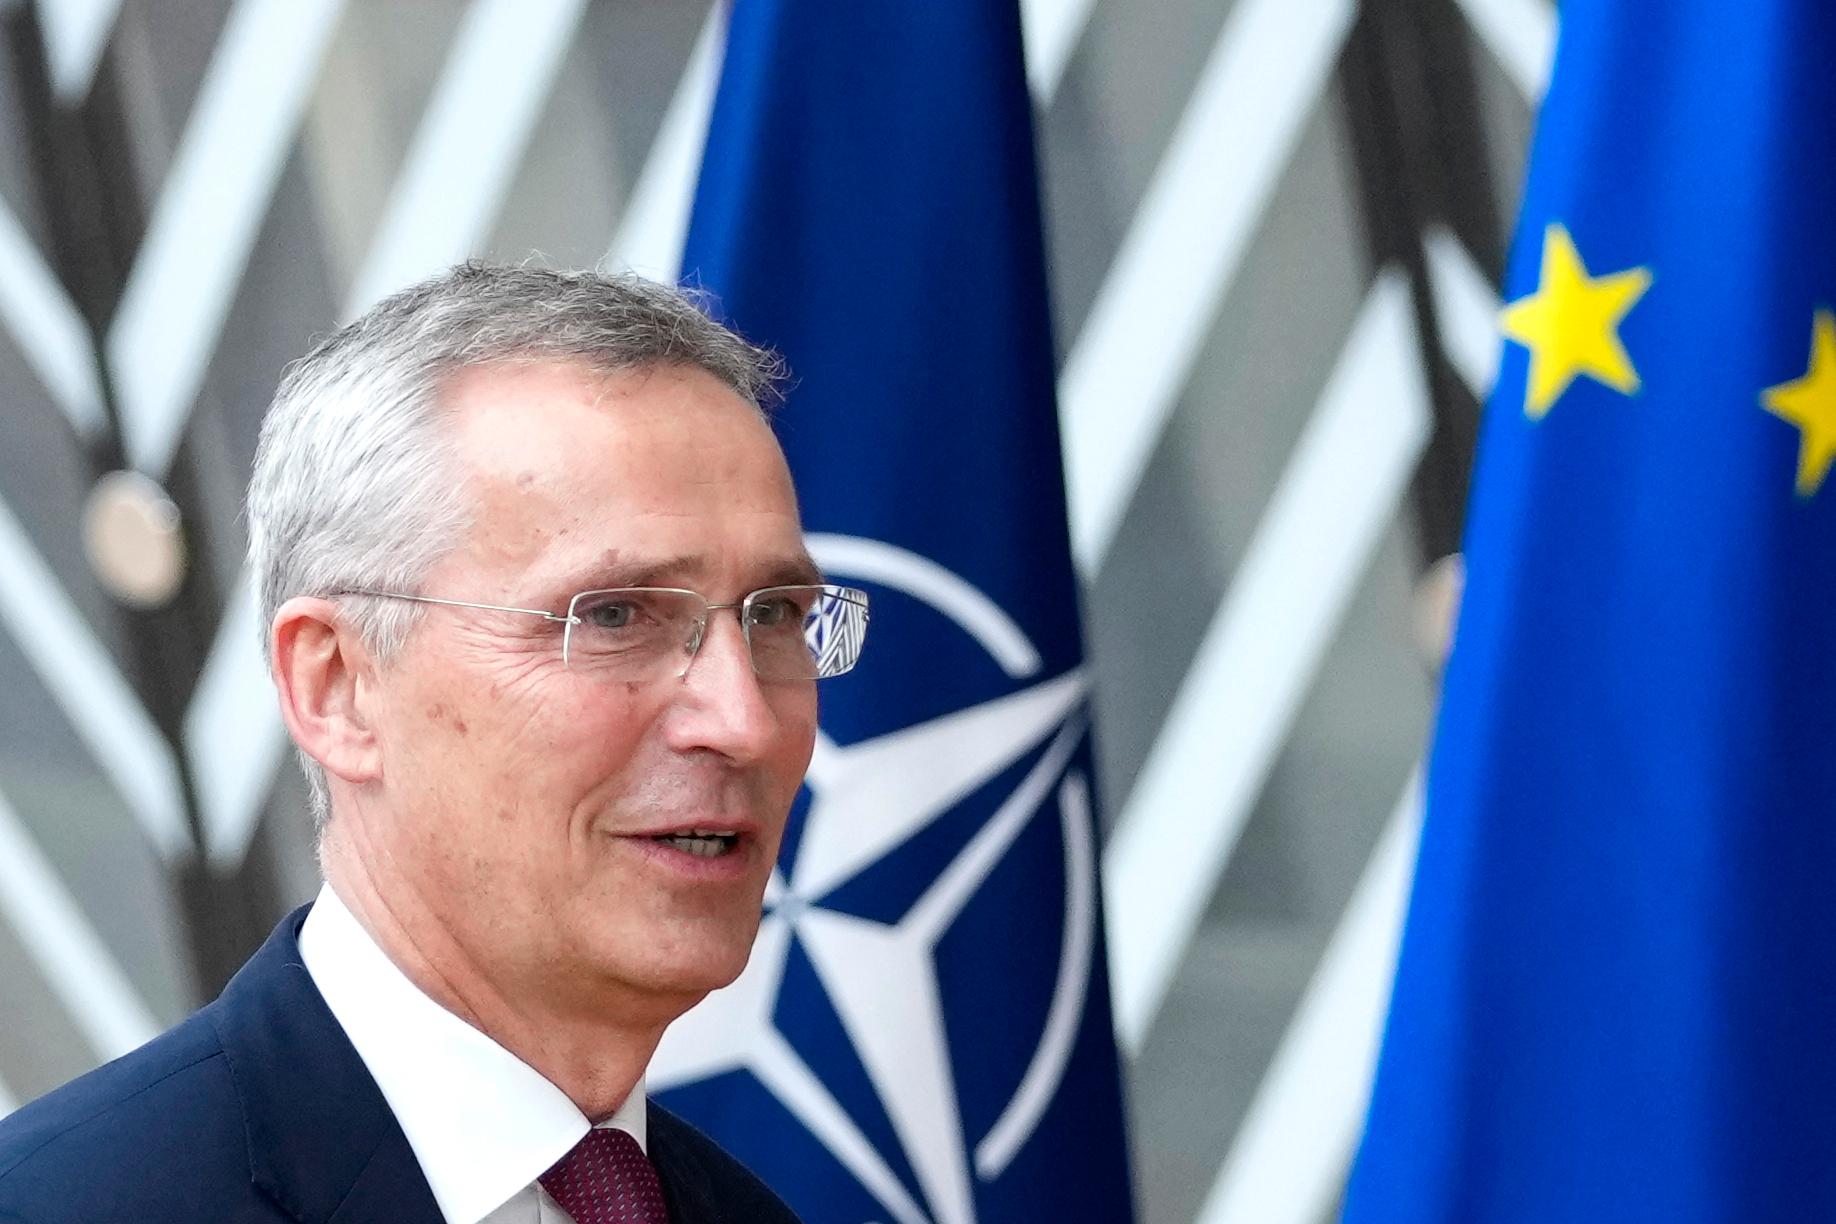 Tirsdag bekrefter Jens Stoltenberg at han har sagt ja til å fortsette som Natos generalsekretær i ett år til. 